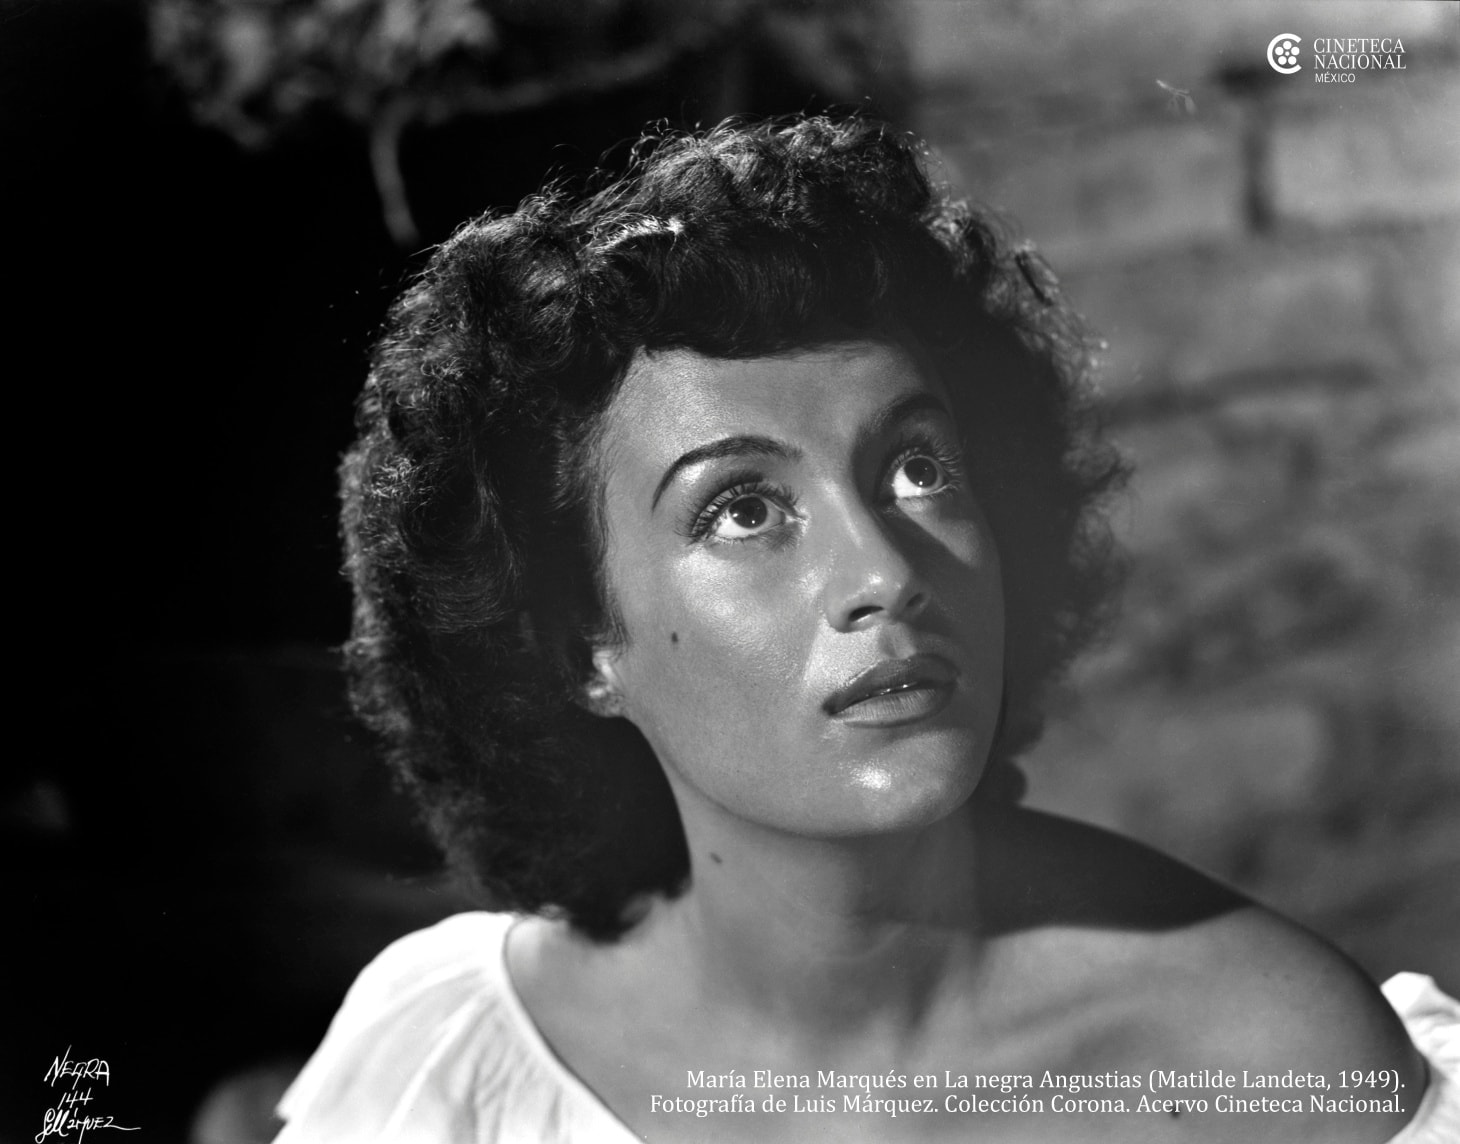 Imagen de la actriz María Elena Márques como 'La Negra Angustias' en 1949